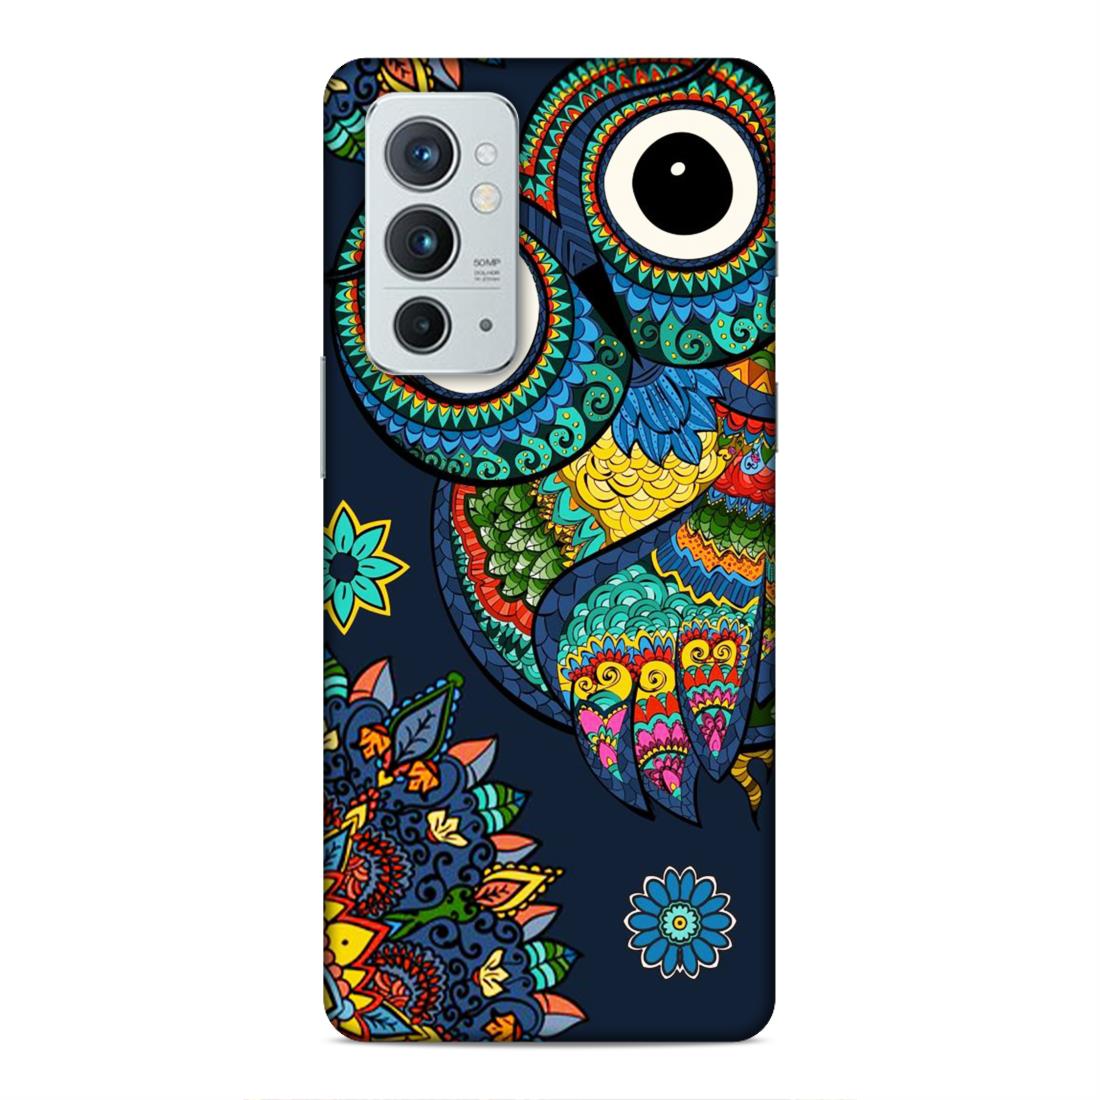 Owl and Mandala Flower Hard Back Case For OnePlus 9 RT 5G